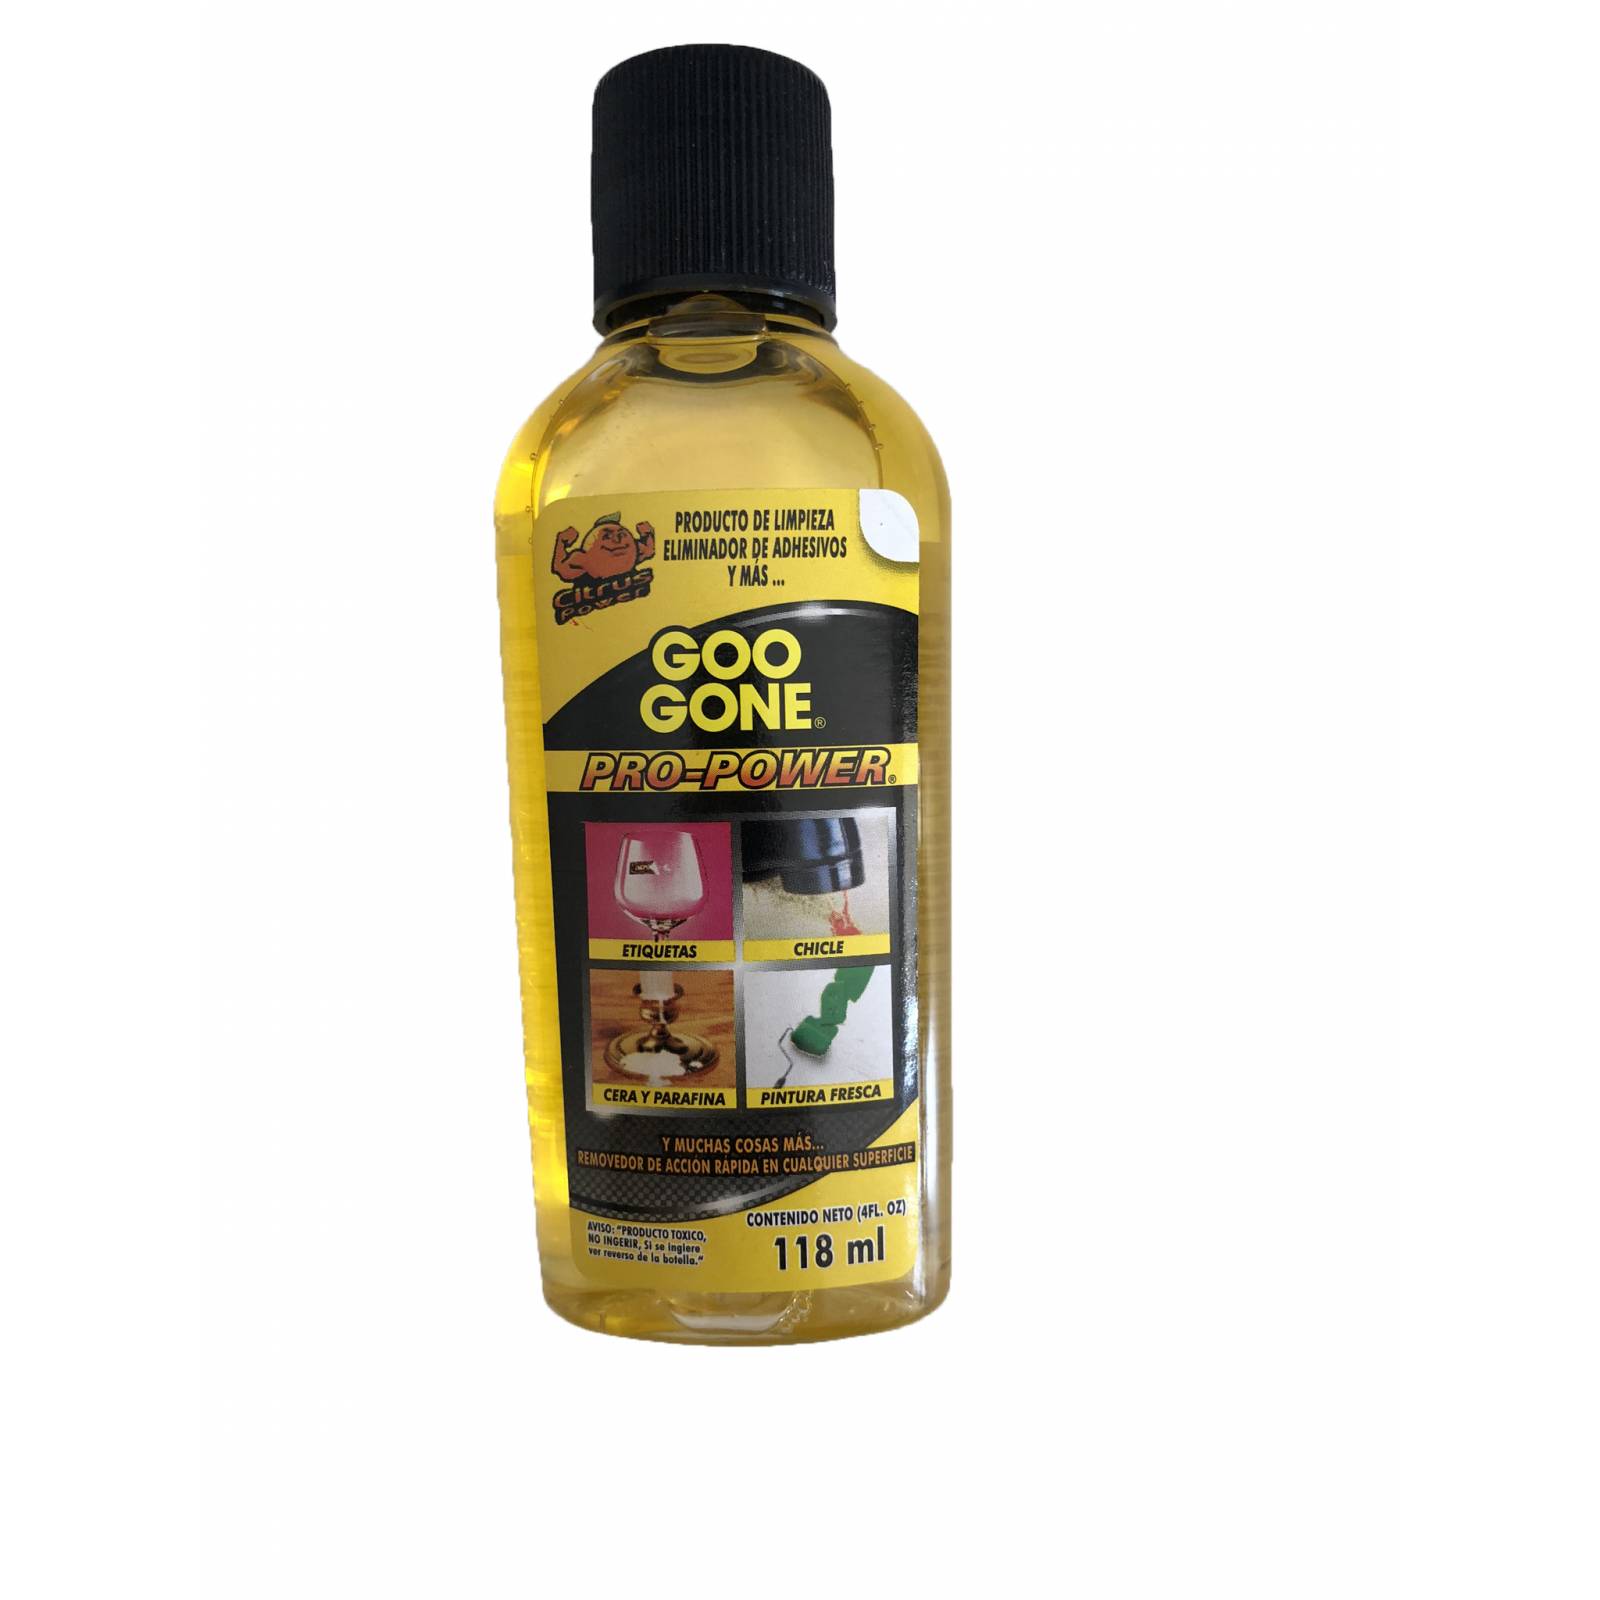 Goo Gone, removedor de adhesivo y residuos de pegamento, aroma citrico, 118 ml.